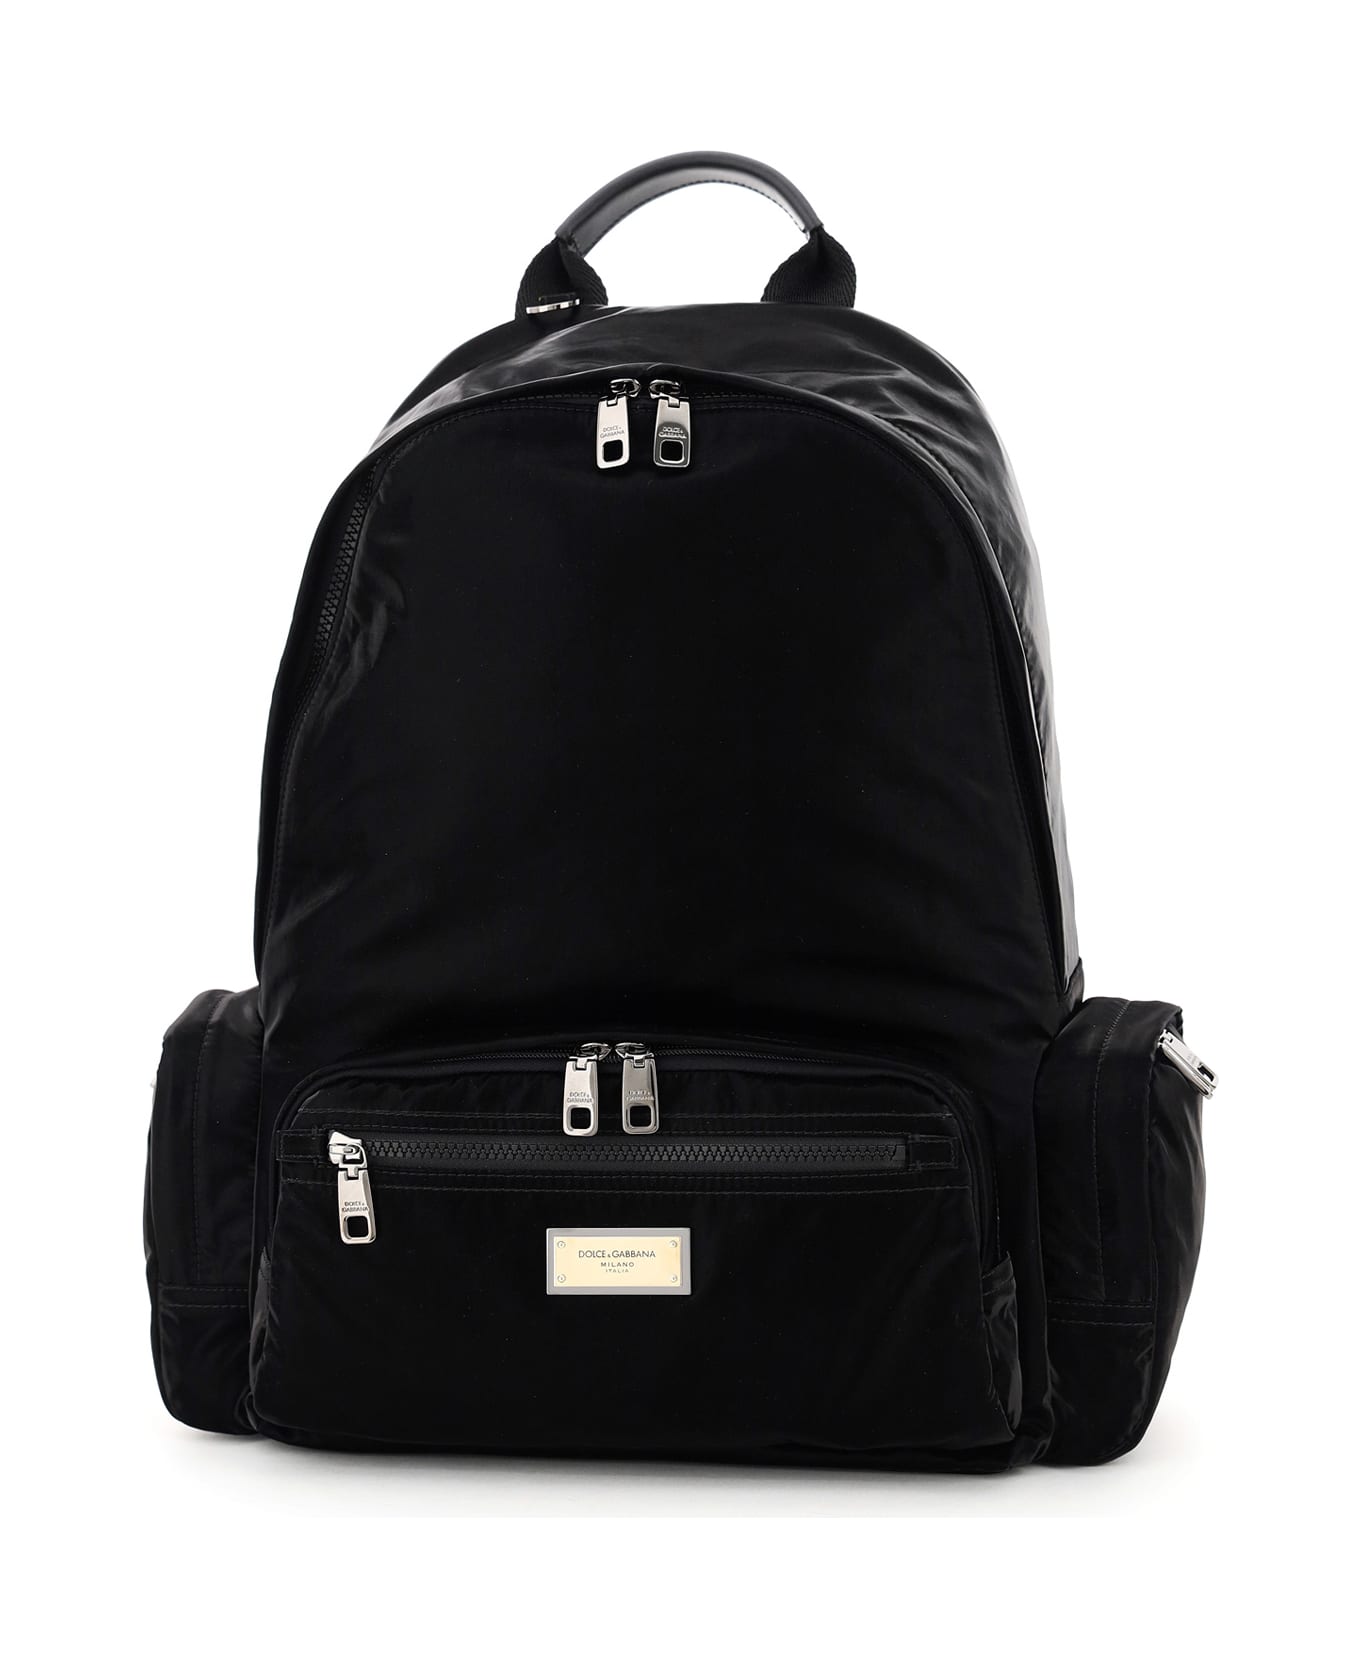 Dolce & Gabbana Samboil Nylon Backpack - BLACK